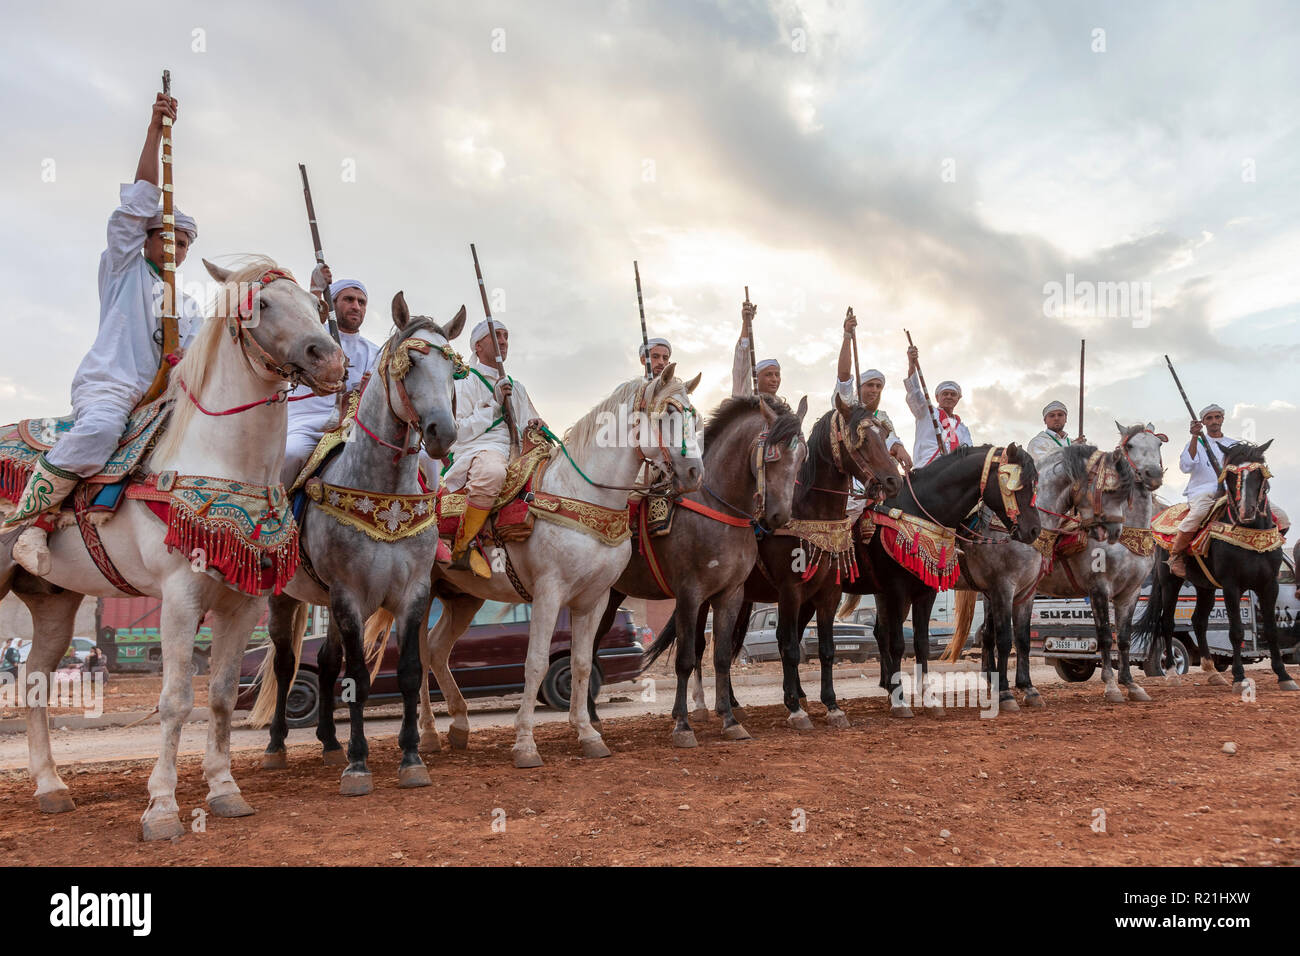 Serba ou l'équipe de cavaliers marocains attendent leur poudre play show Banque D'Images